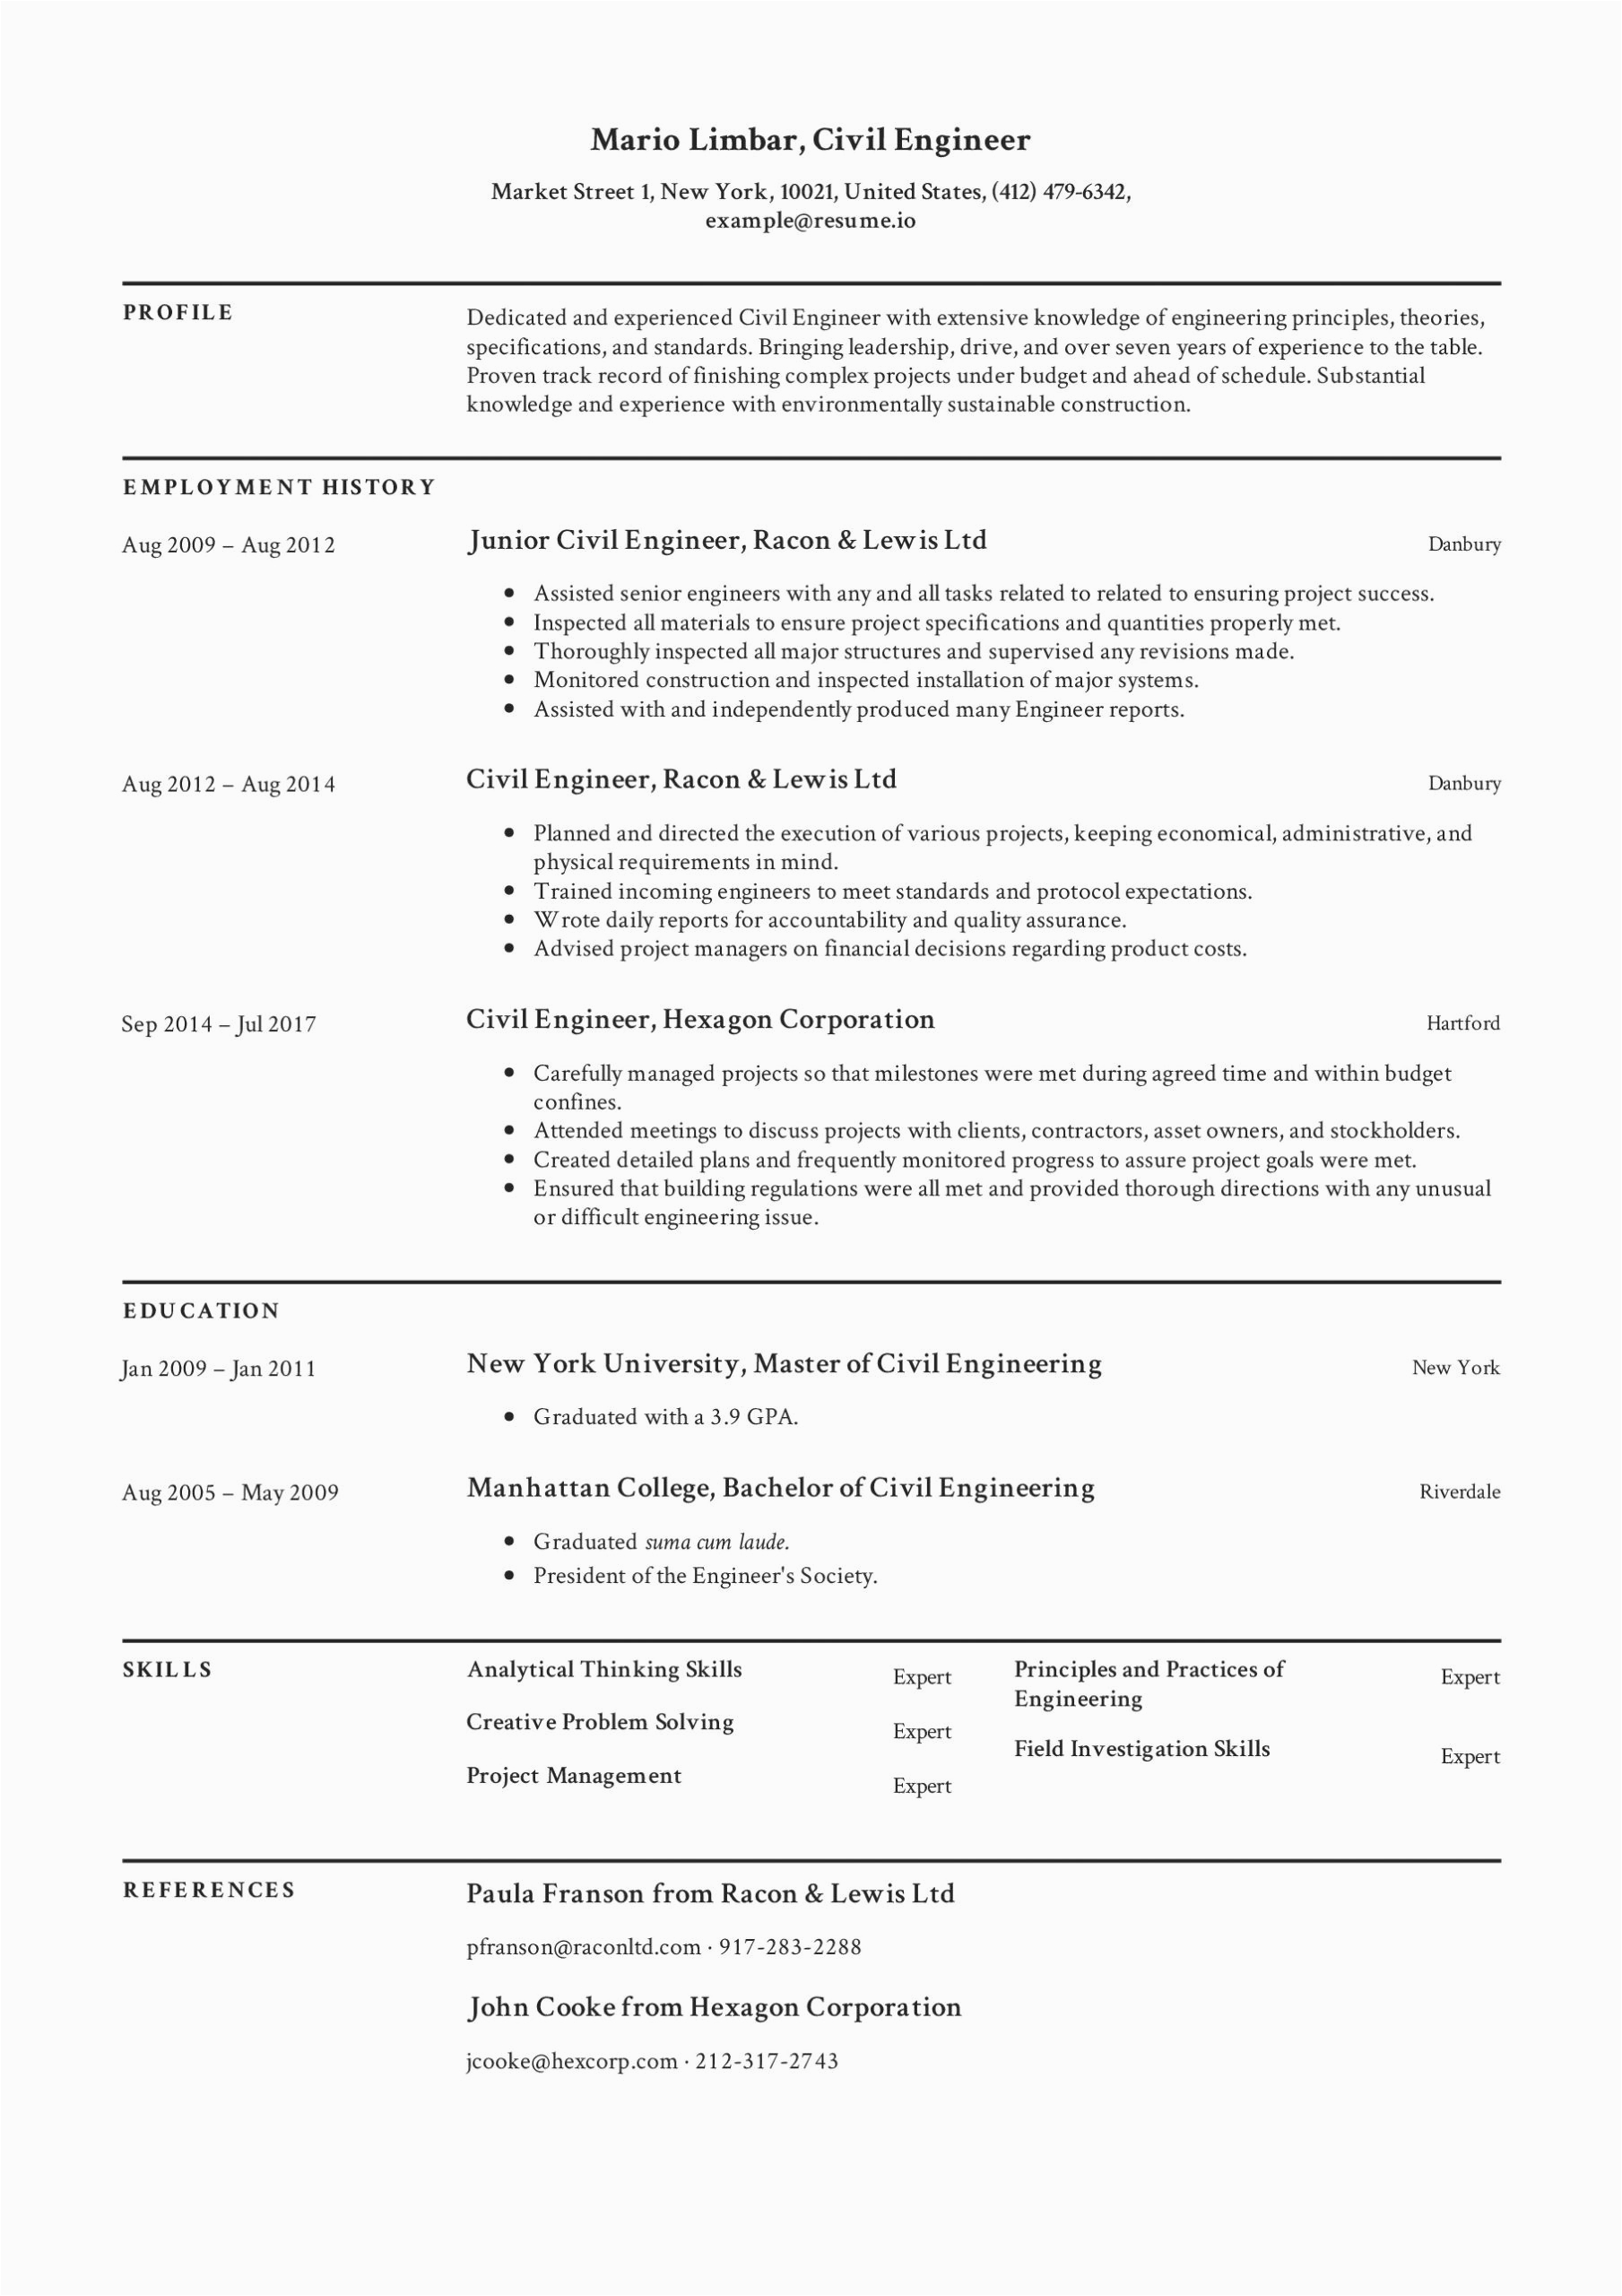 Chronological Resume Sample for Civil Engineer Civil Engineer Resume Quora